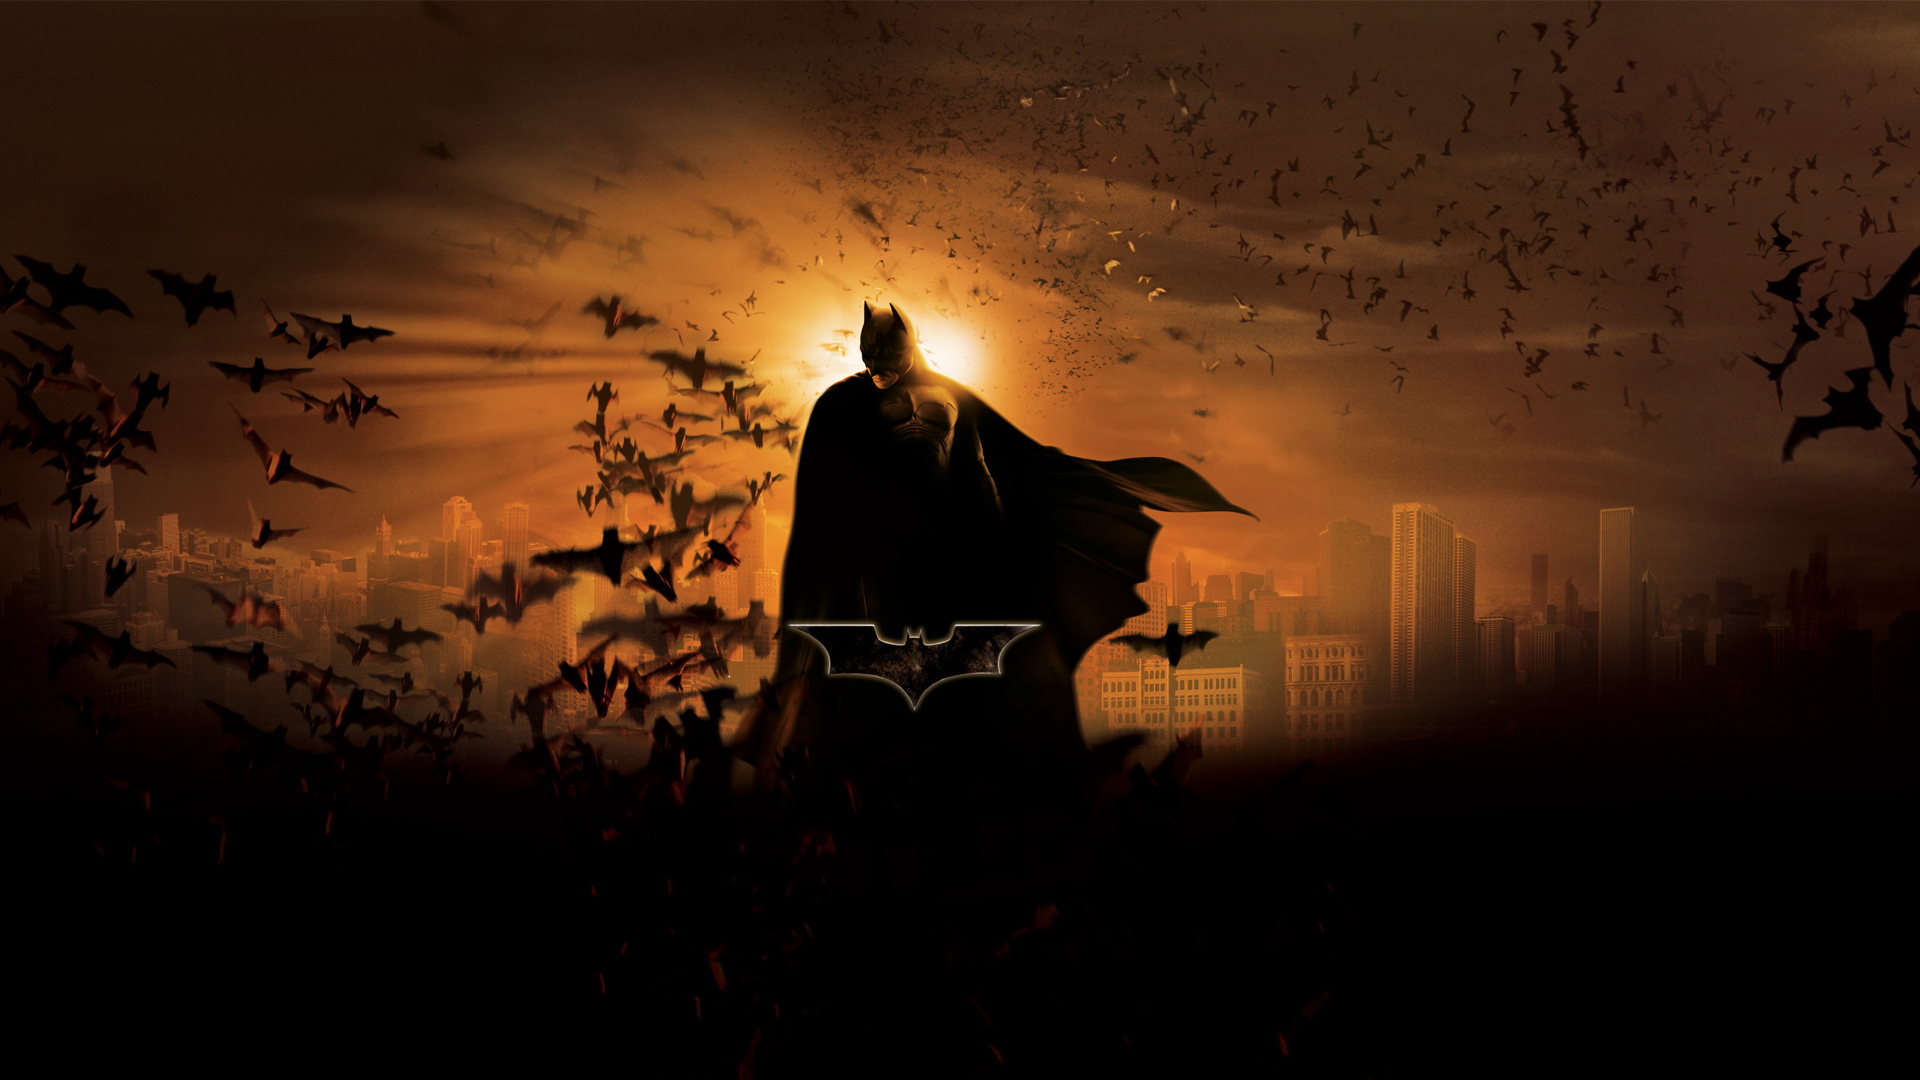 batman wallpaper hd 1080p